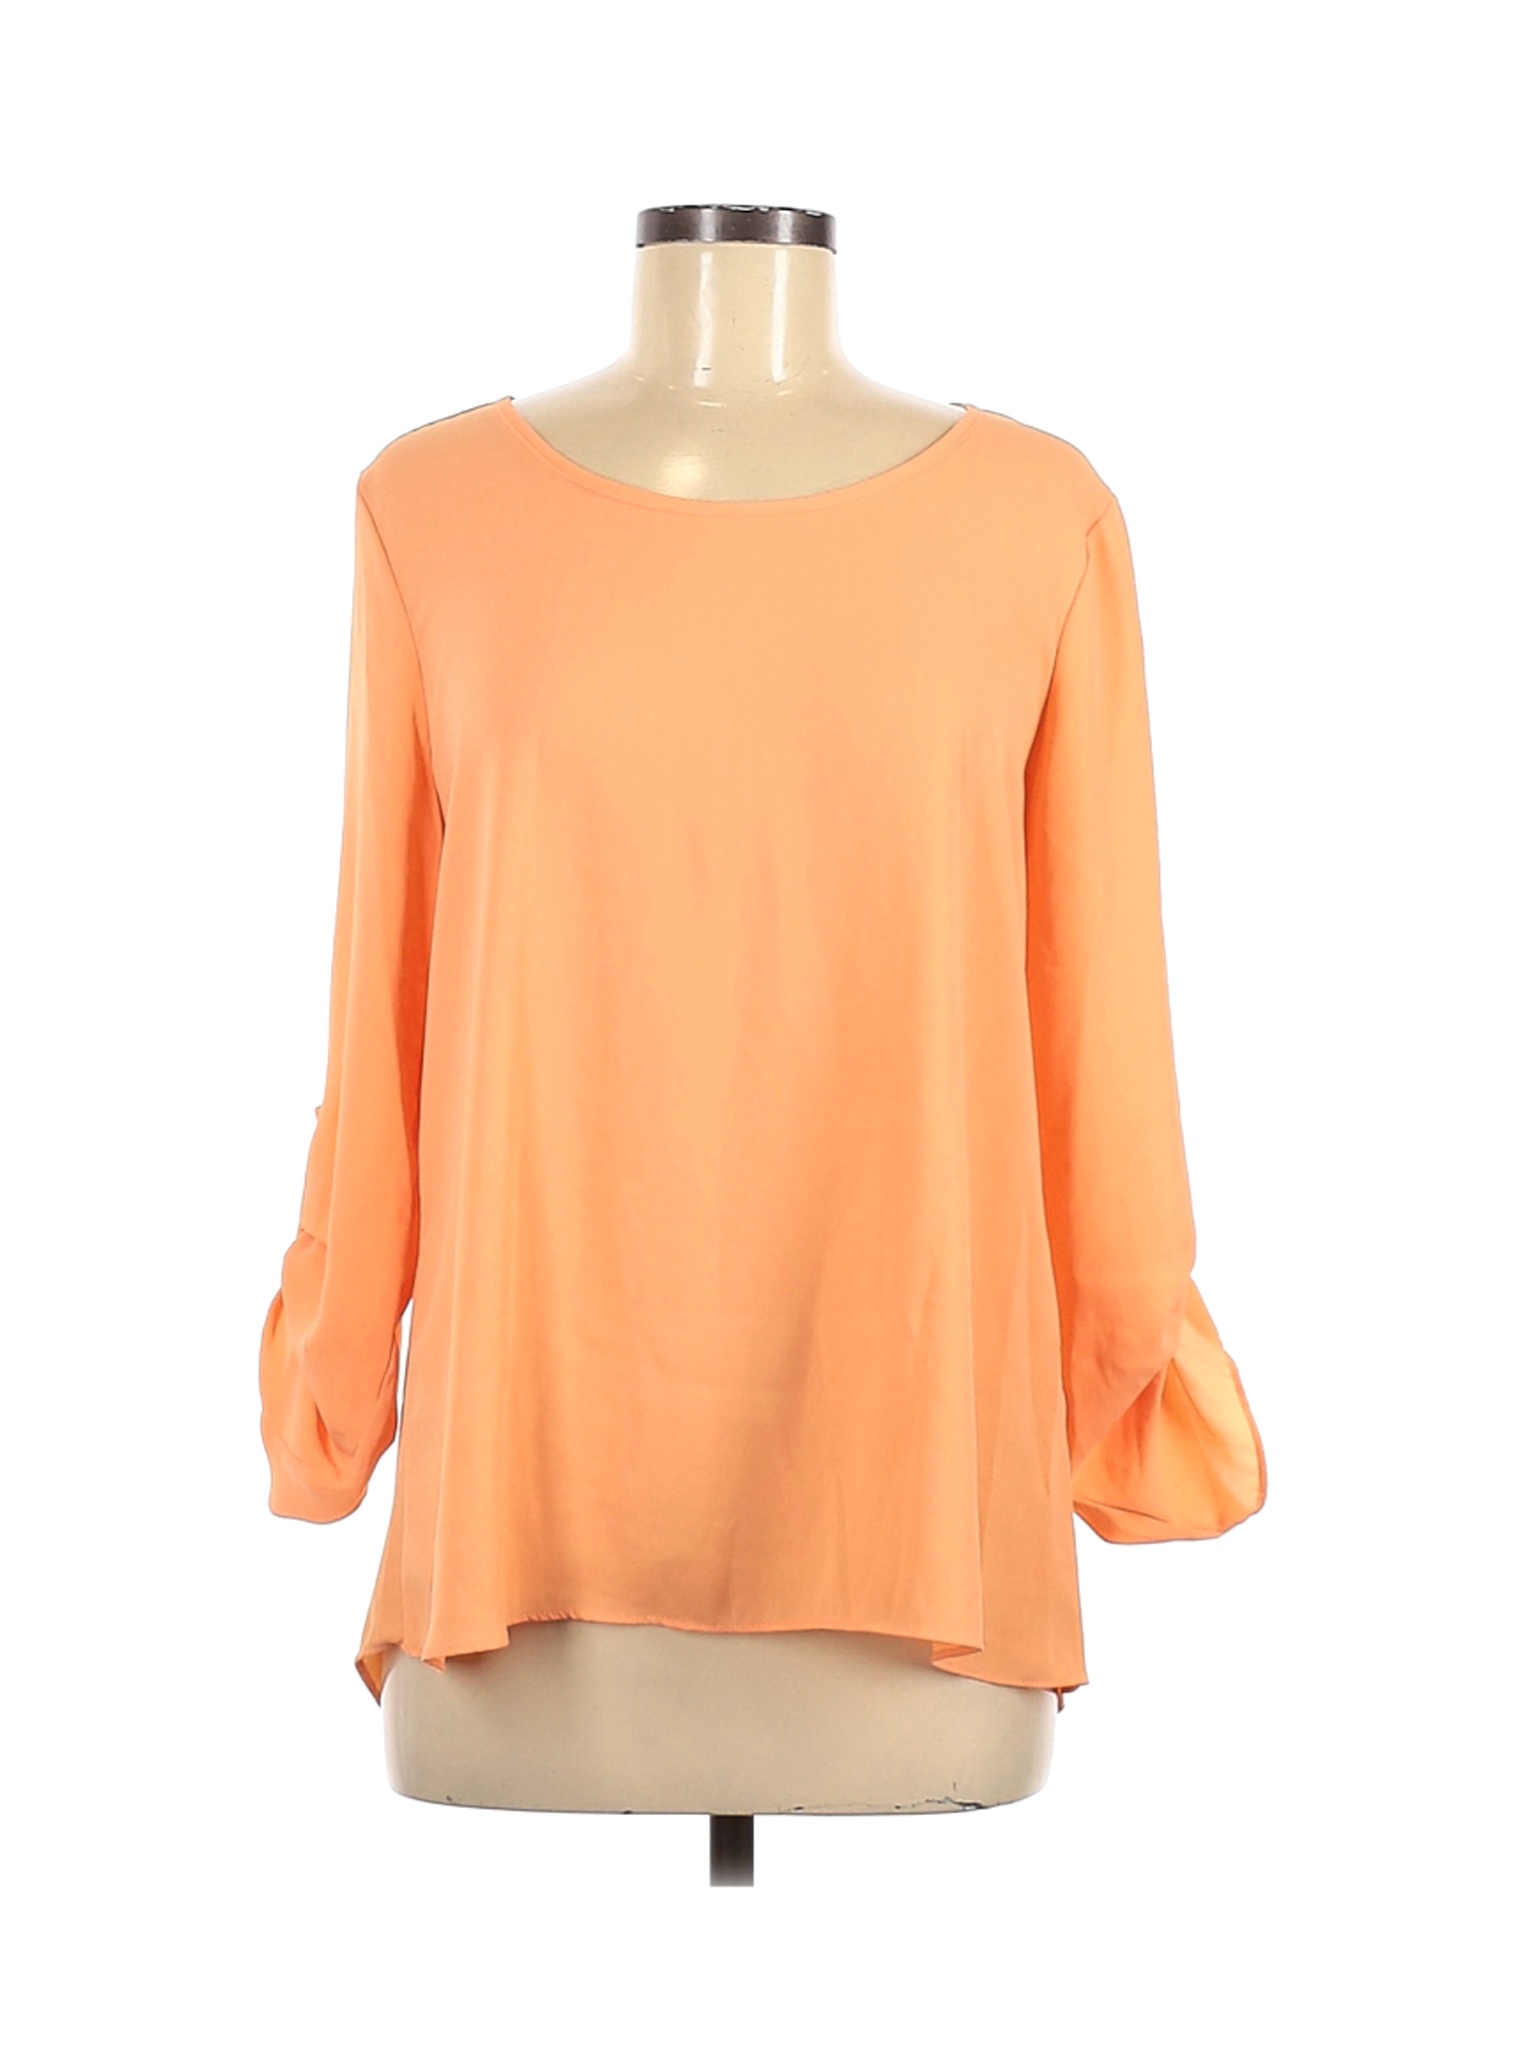 Moa Moa Women Orange 3/4 Sleeve Blouse M | eBay